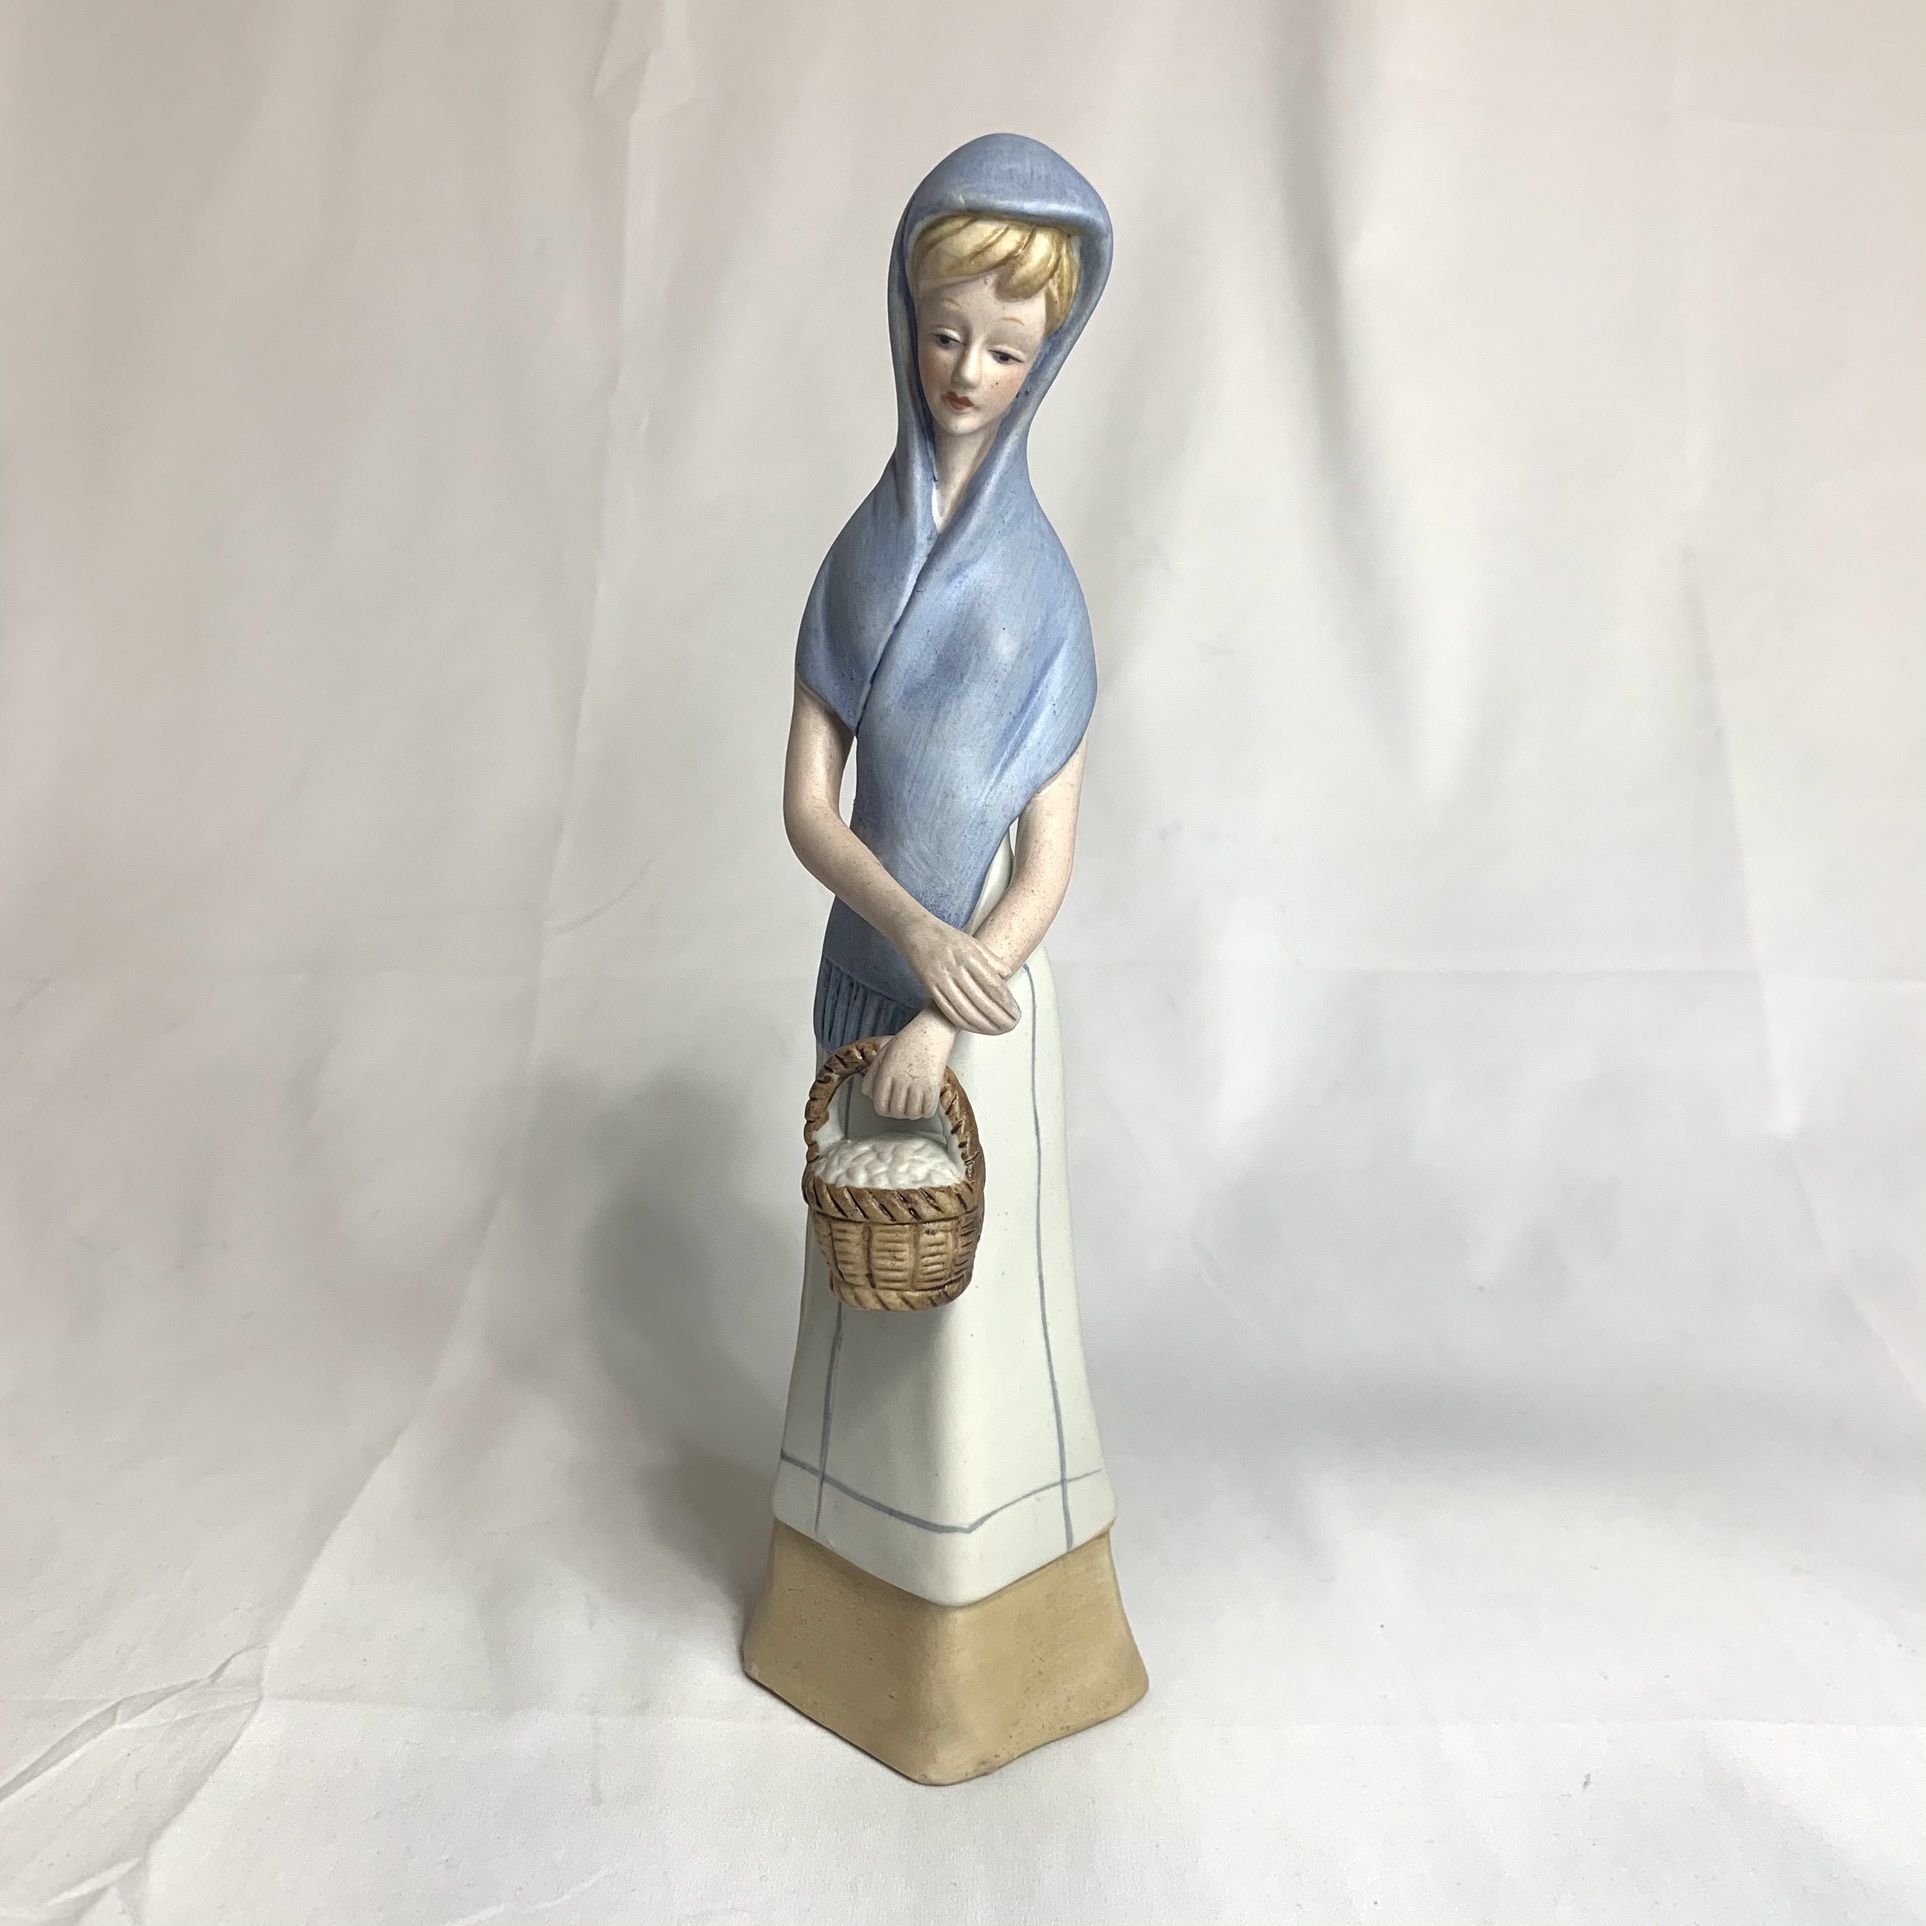 Lladro look alike peasant girl figurine